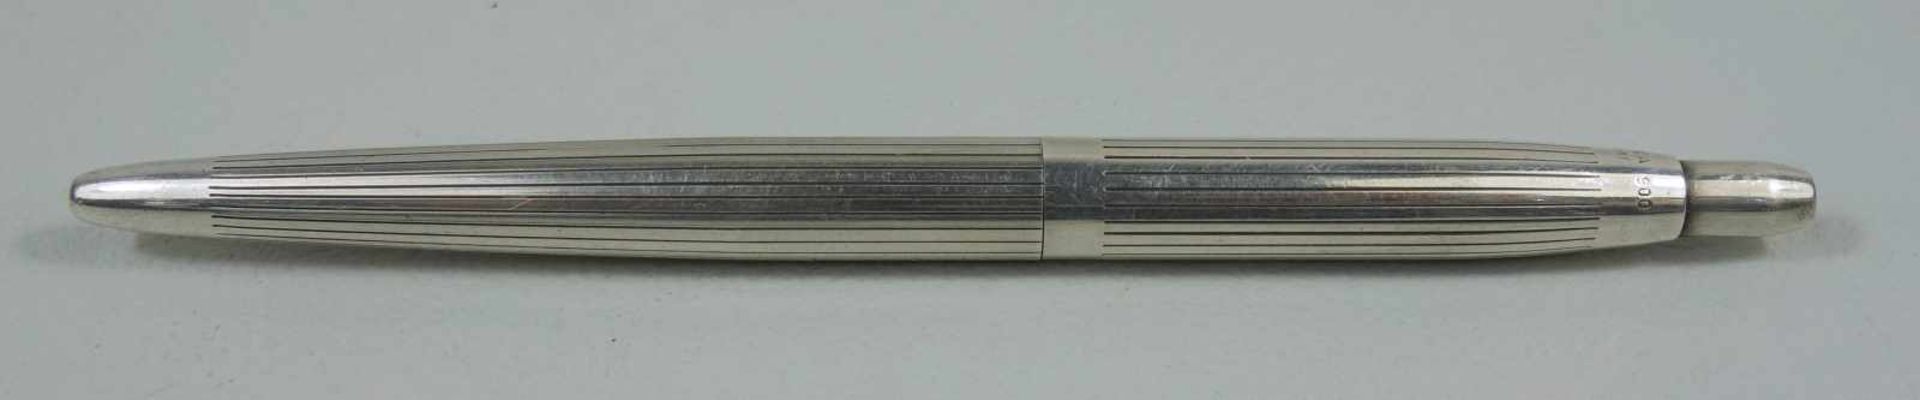 Kleiner Kugelschreiber, "Fend Truxa", 900er Silbergerillt, mit Druckknopf, L.11cm, Gew.14g